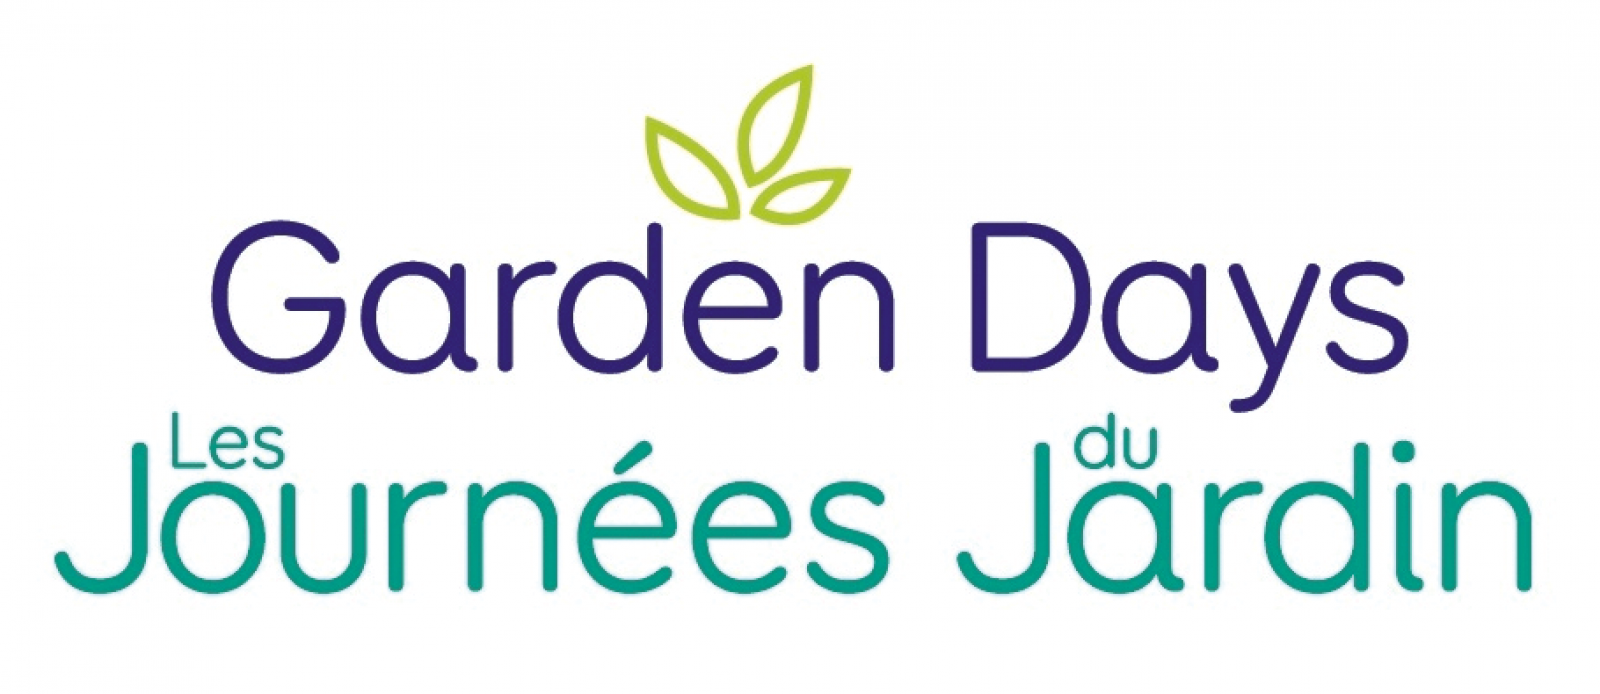 Join Garden Days celebrations in June